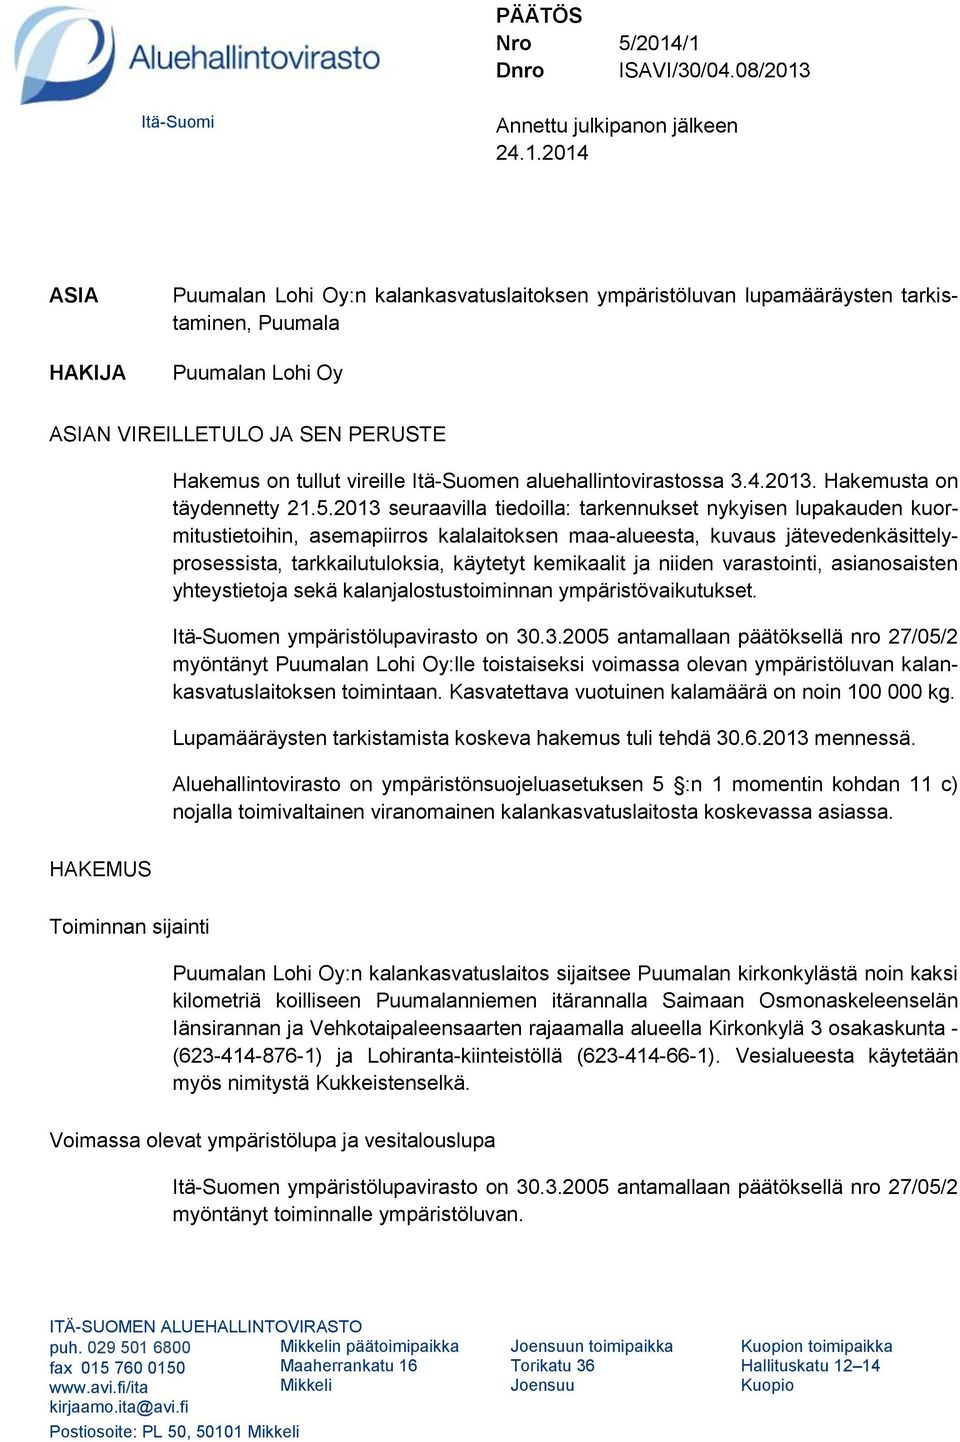 ASIAN VIREILLETULO JA SEN PERUSTE Hakemus on tullut vireille Itä-Suomen aluehallintovirastossa 3.4.2013. Hakemusta on täydennetty 21.5.